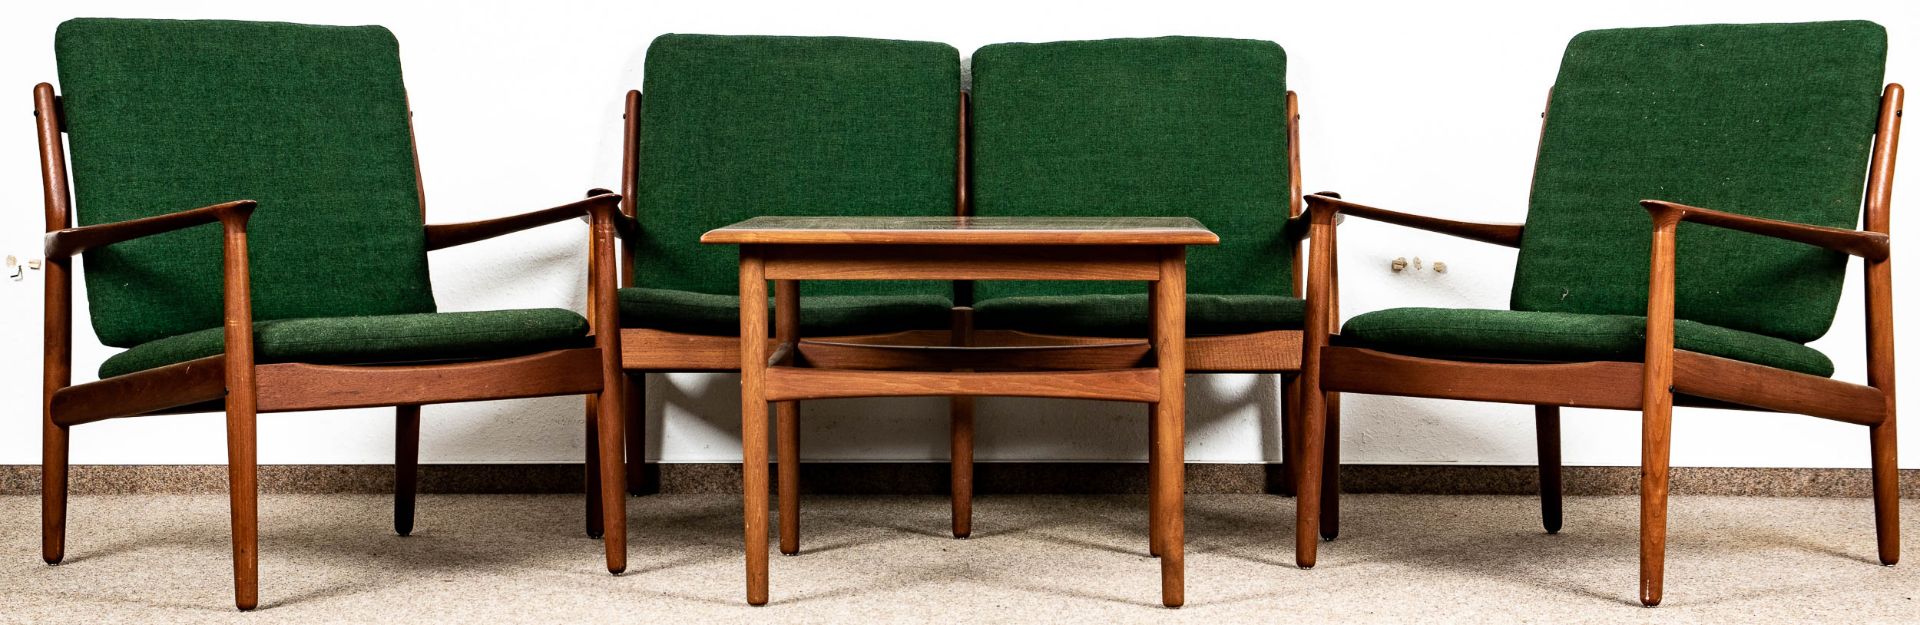 4teilige Teakholz - Sitzgarnitur, Danisch Design der 1950er/60er Jahre, bestehend aus zweisitziger - Image 2 of 5